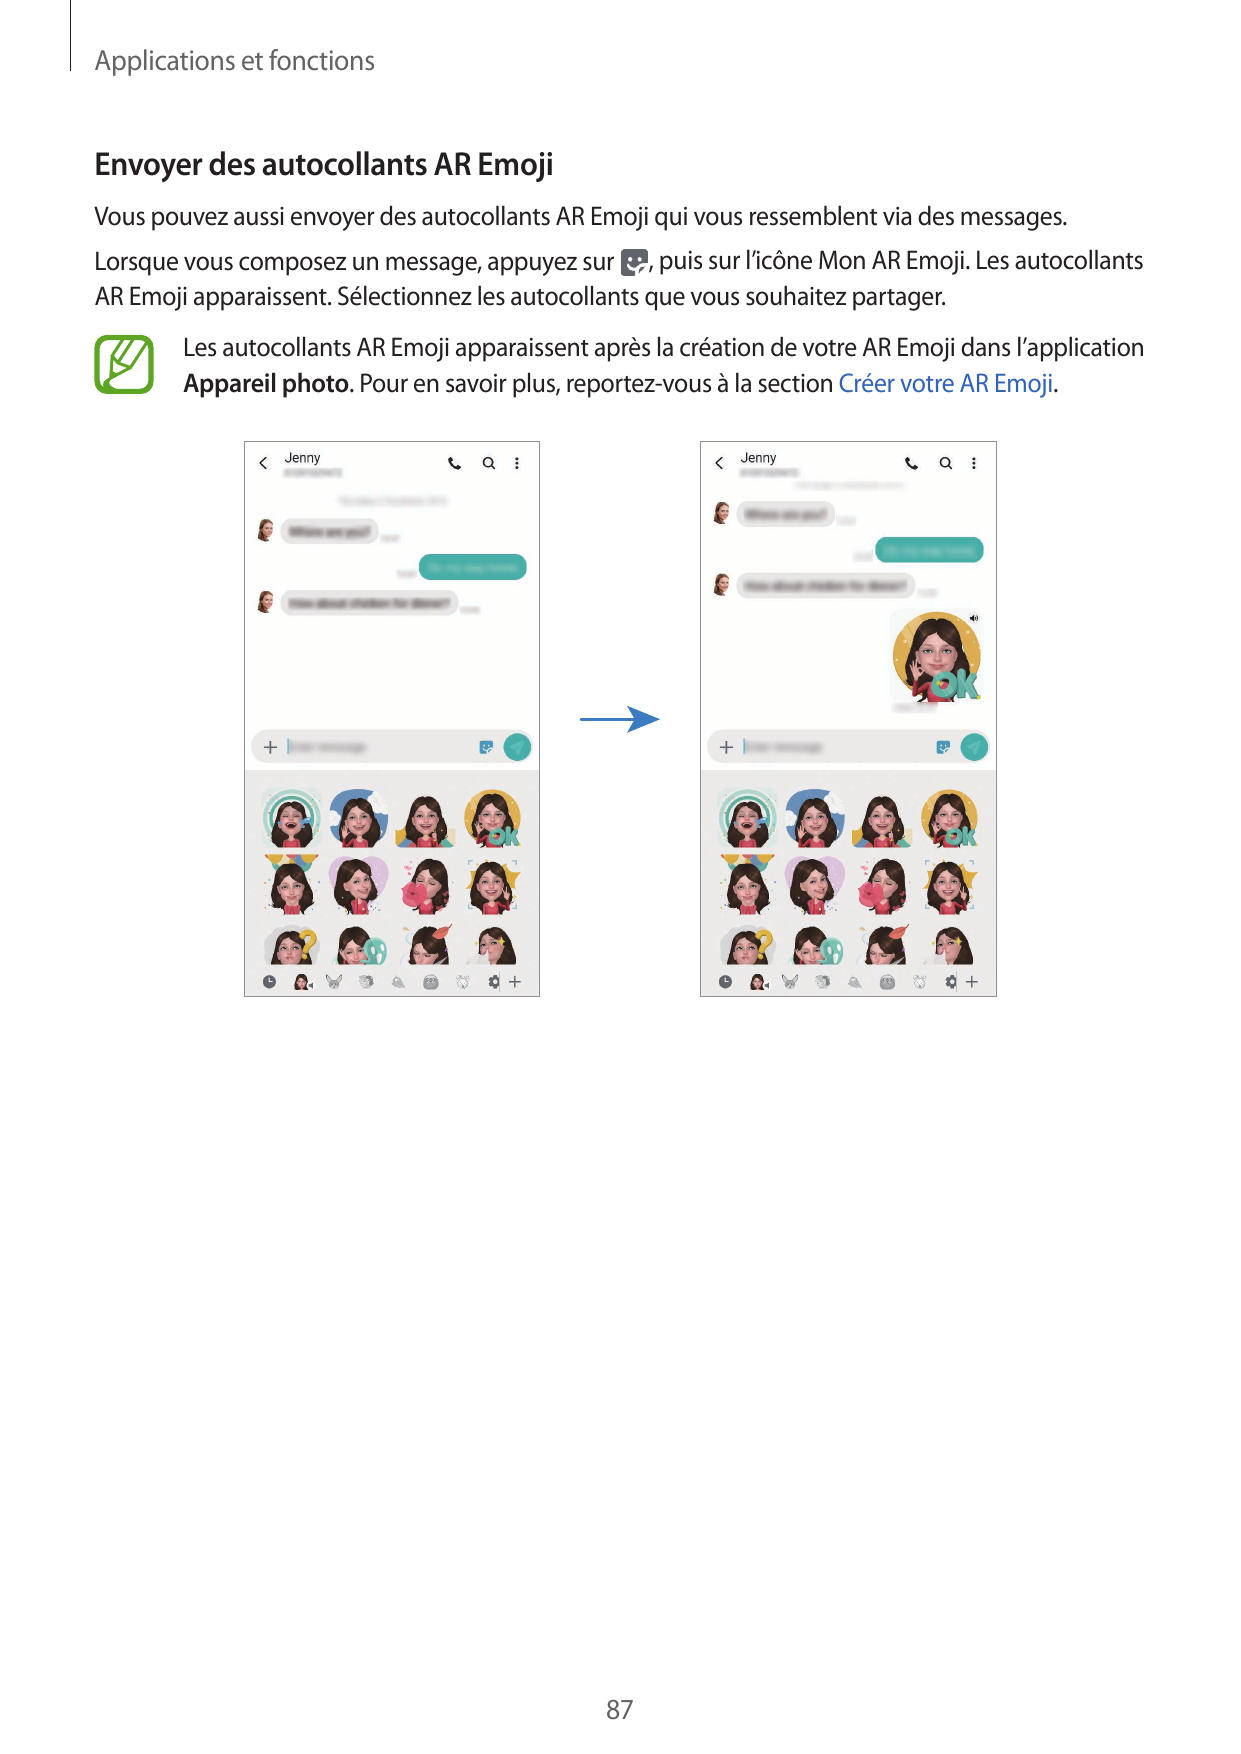 Applications et fonctionsEnvoyer des autocollants AR EmojiVous pouvez aussi envoyer des autocollants AR Emoji qui vous ressemble